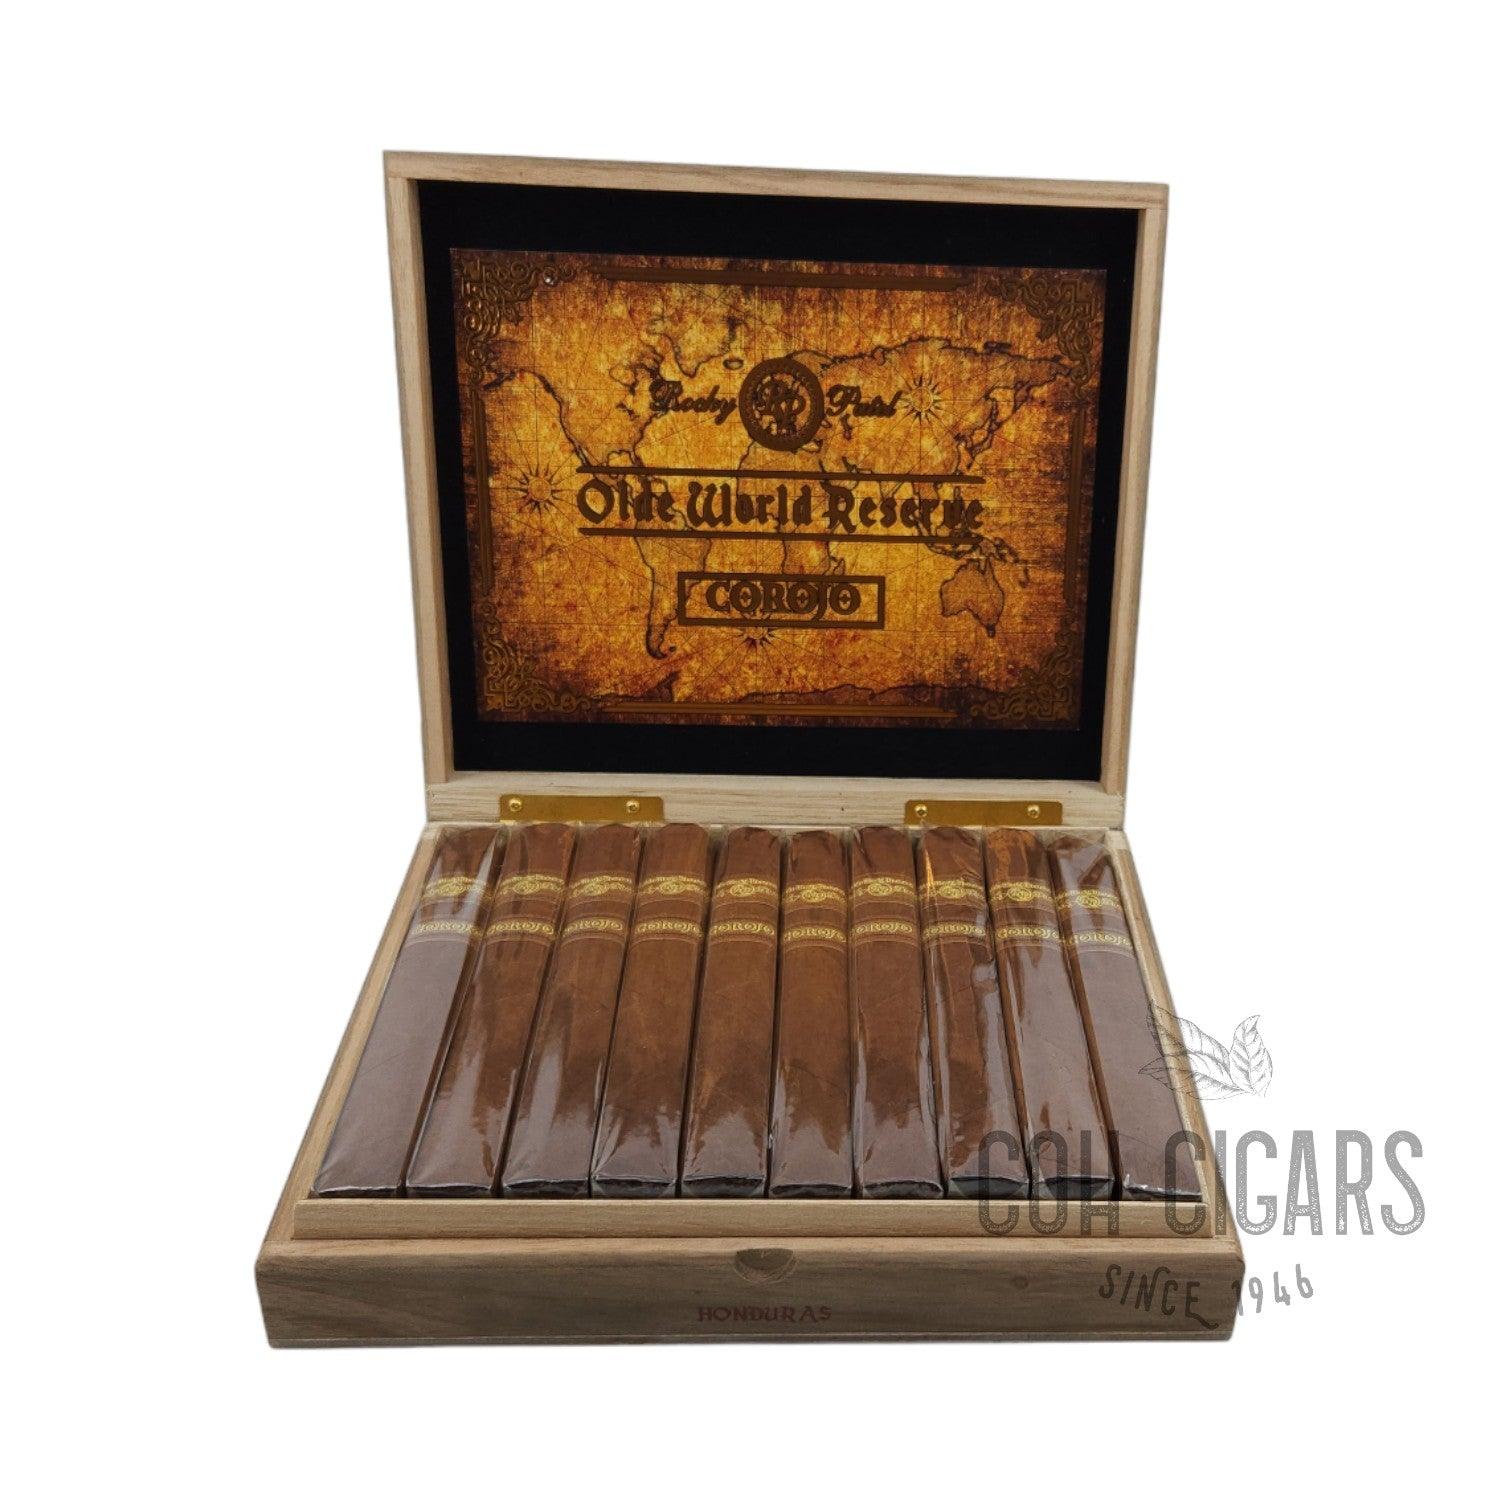 Rocky Patel Cigar | Olde World Reserve Toro Corojo | Box 20 - HK CohCigars